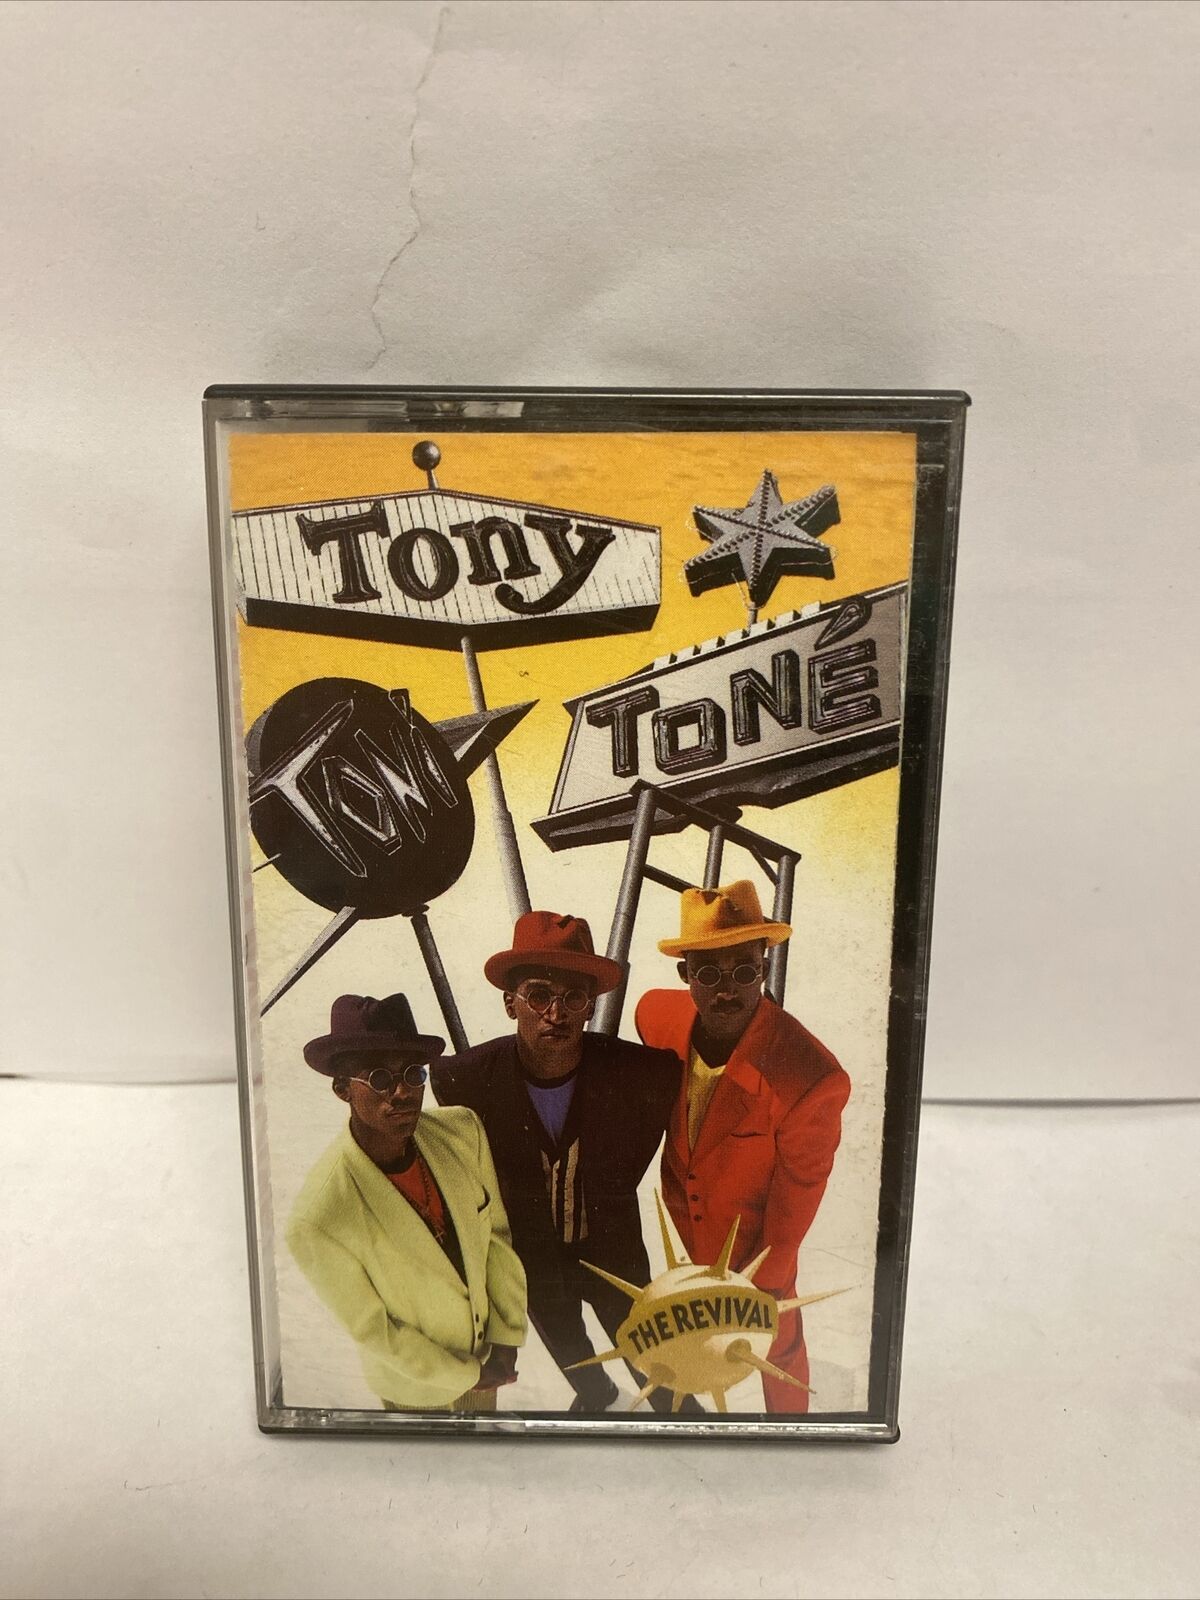 Vintage Tony Toni Tone The Revival (Cassette) Hip Hop Rap C100565 1990 First